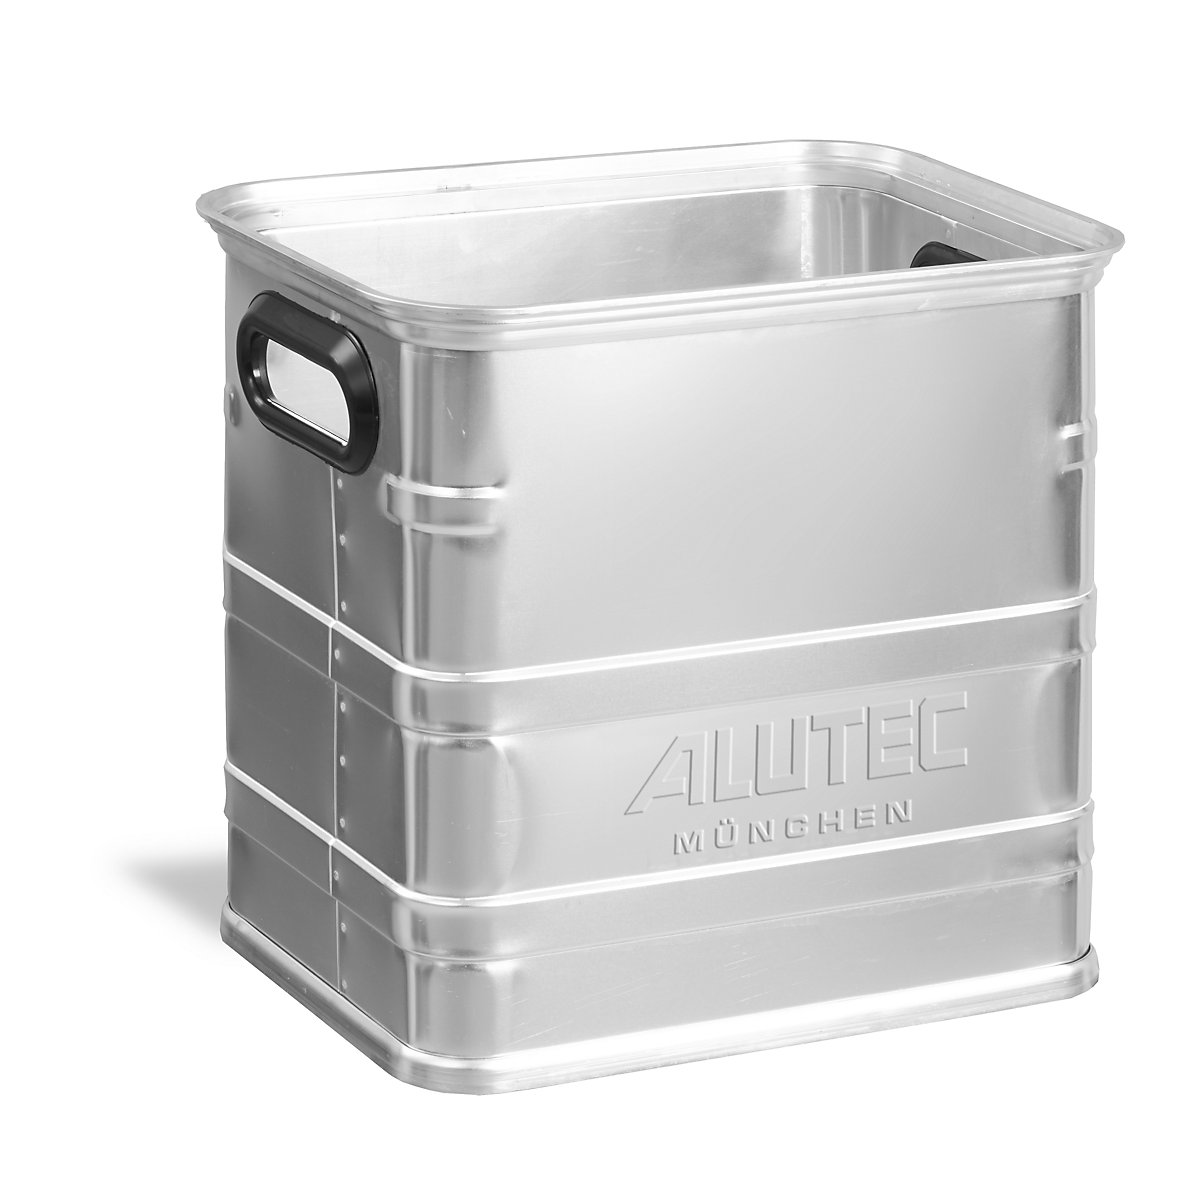 Caisse de manutention en aluminium, compatible avec palettes Europe, capacité 40 l-5